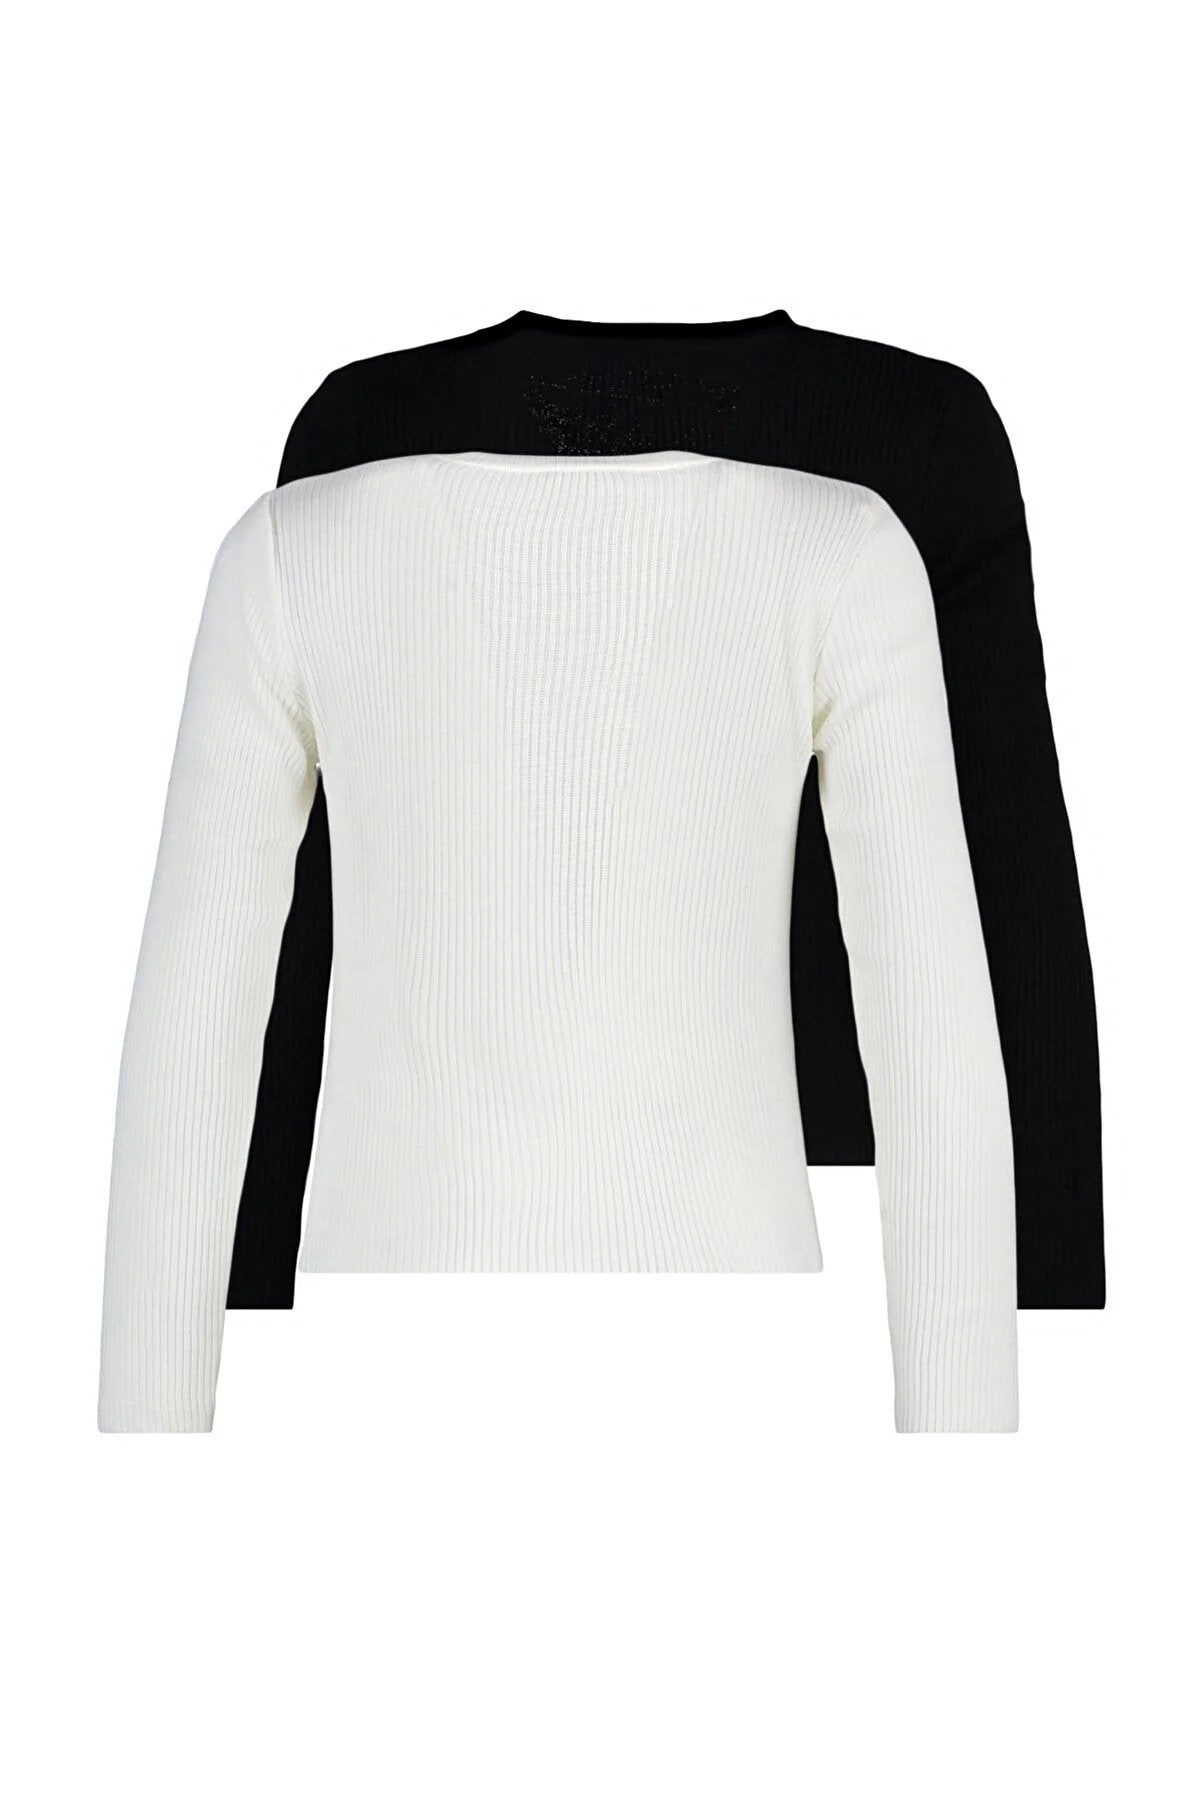 Trendyol Black & White Slim Fit Sweaters